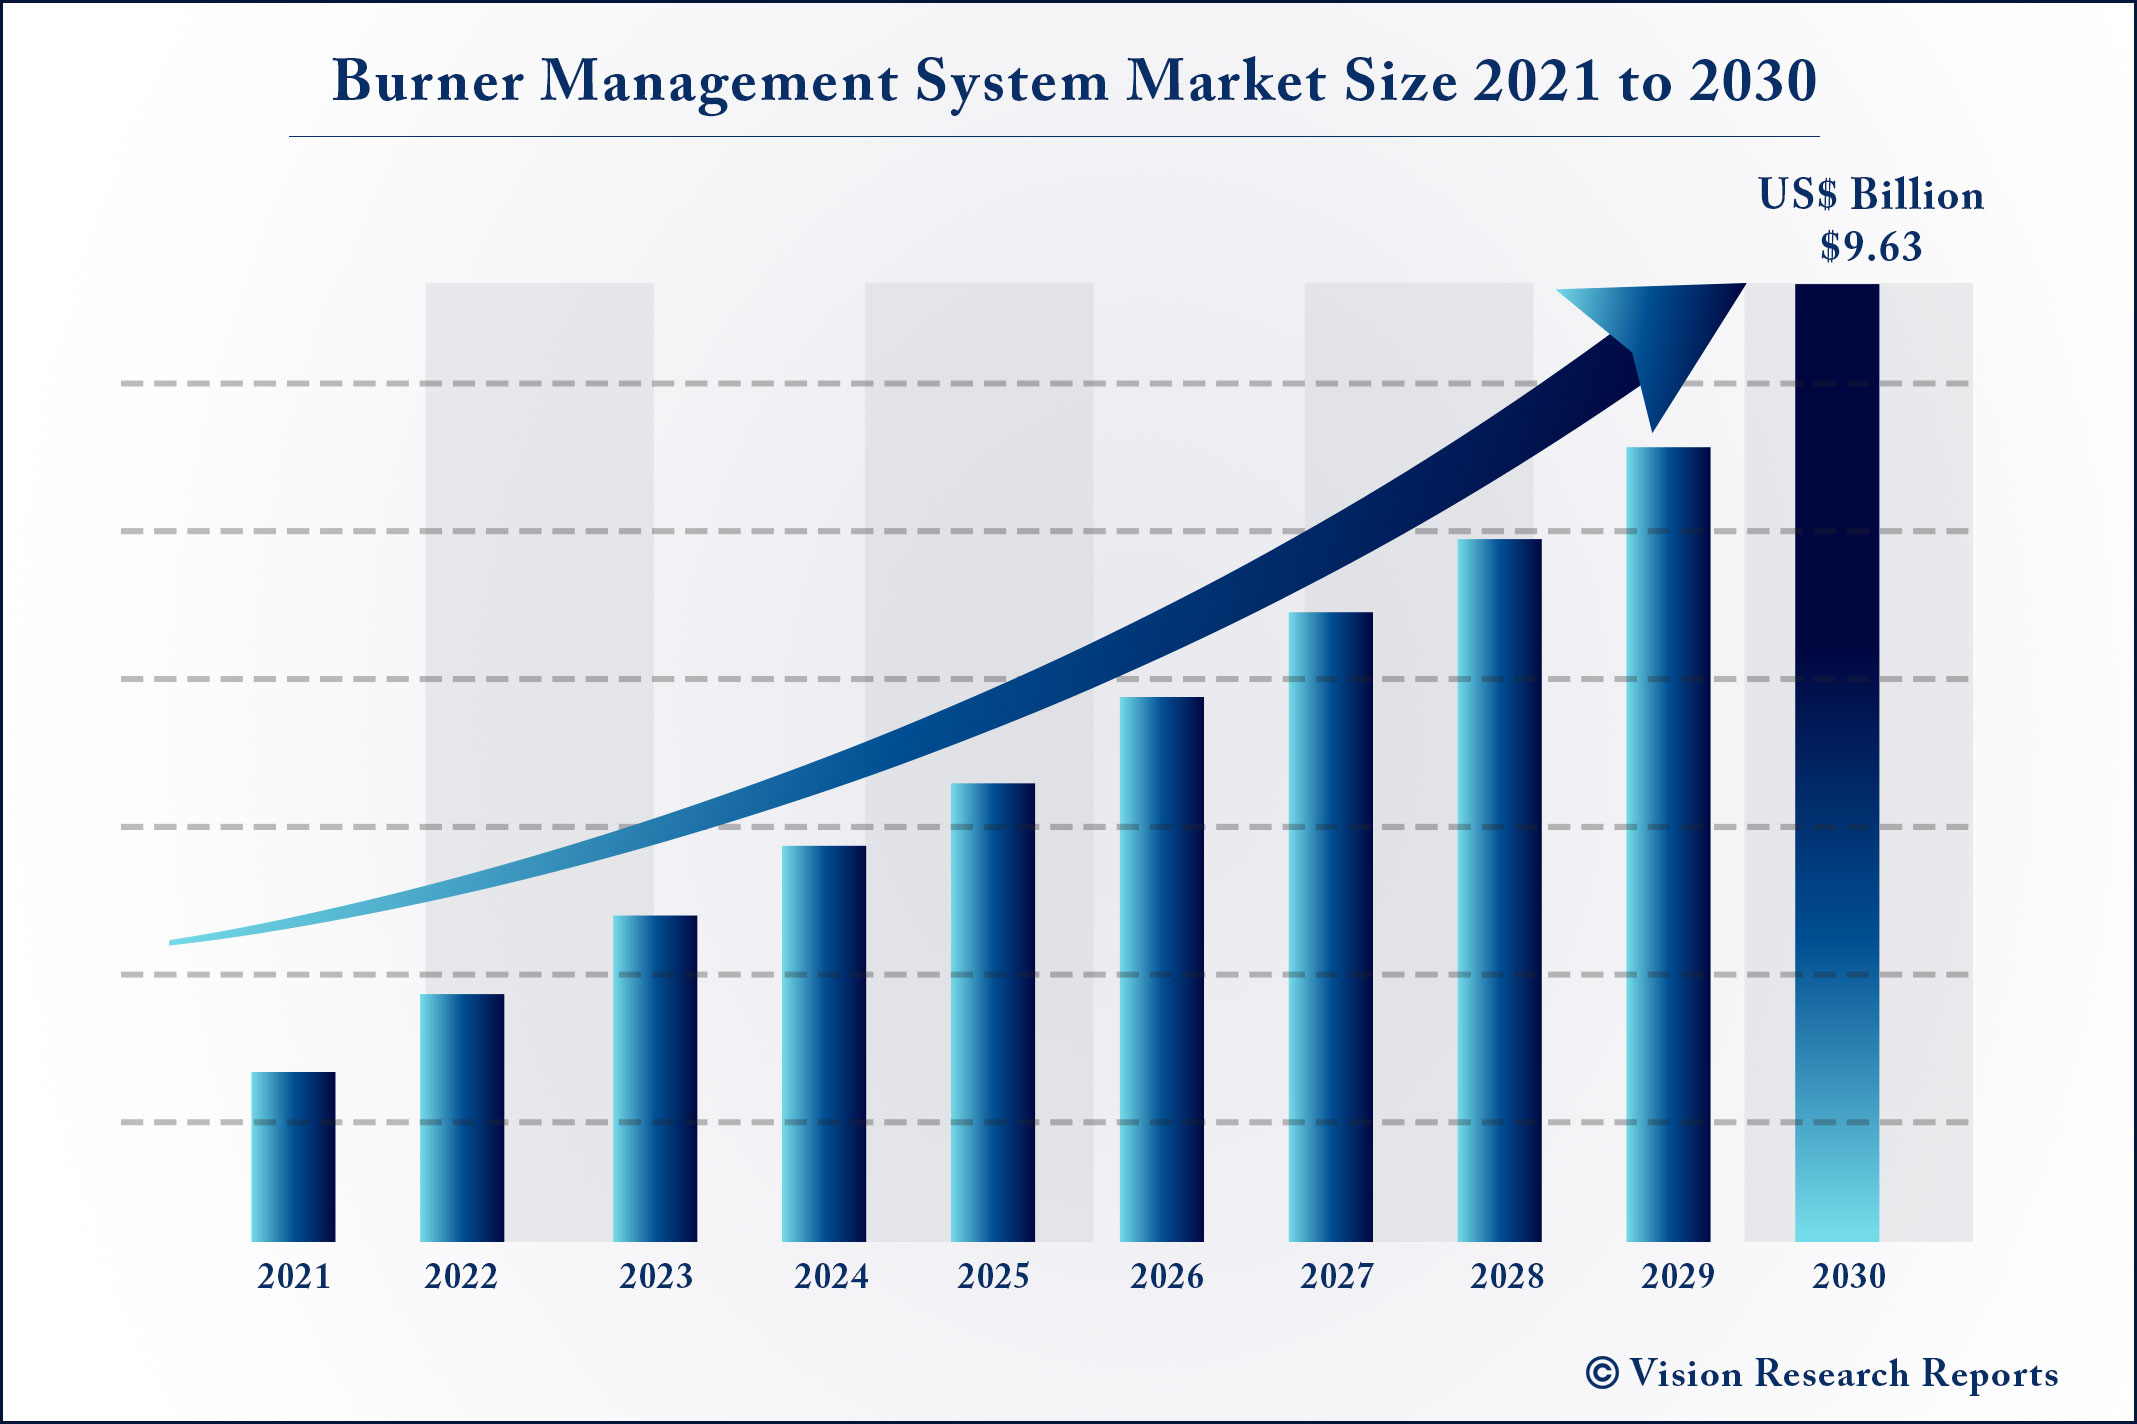 Burner Management System Market Size 2021 to 2030